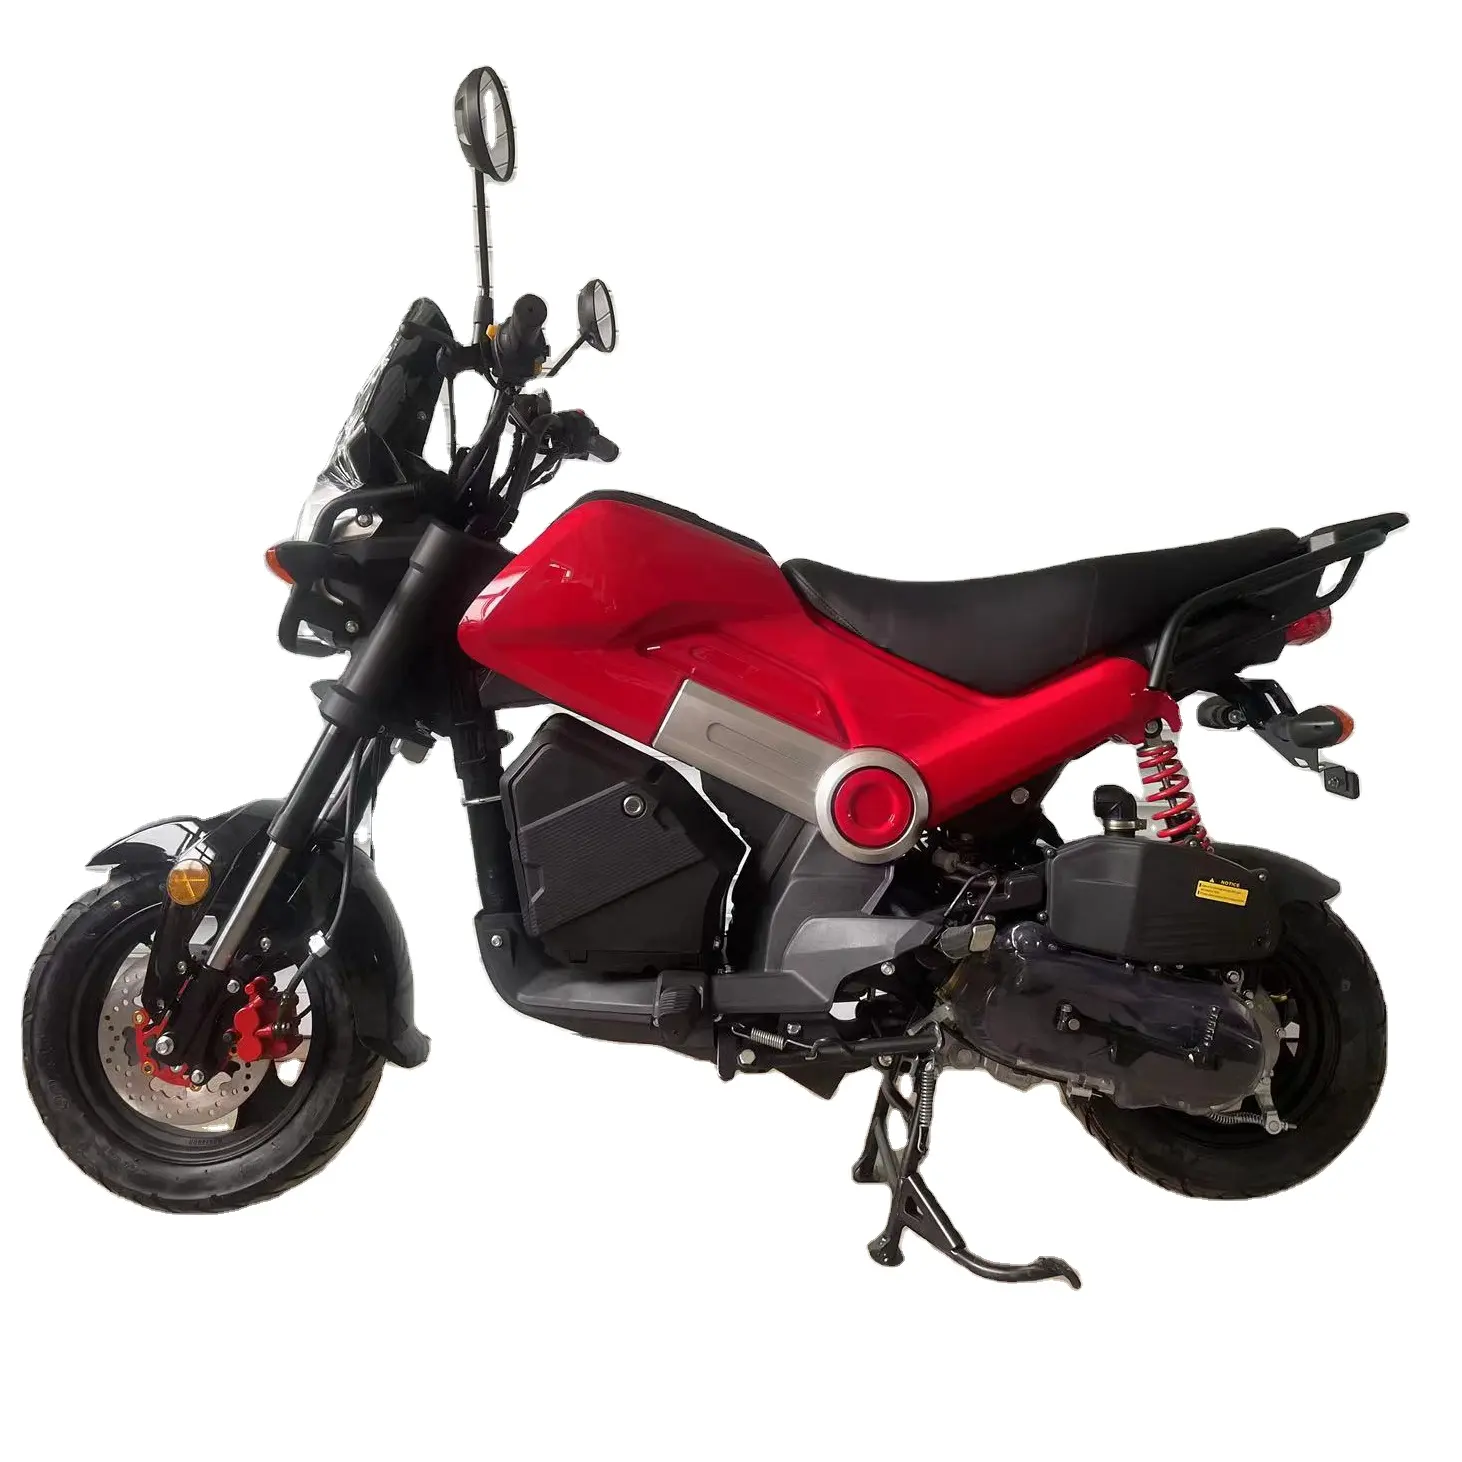 Lextra бензиновый 110cc 4-тактный мотоцикл с воздушным охлаждением, другие внедорожные мотоциклы